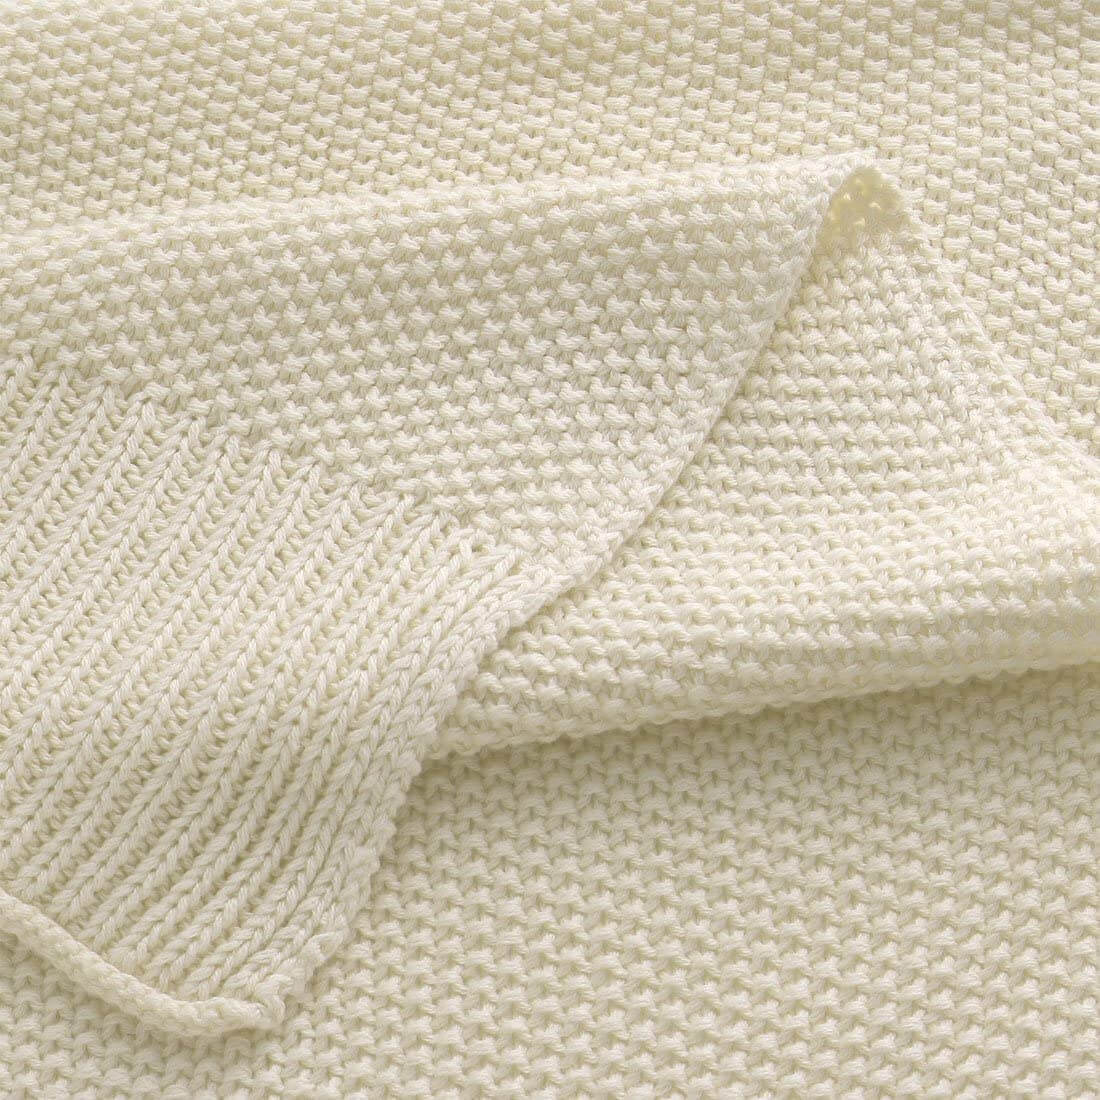 Sweater Cotton Weave Blanket / Full/queen